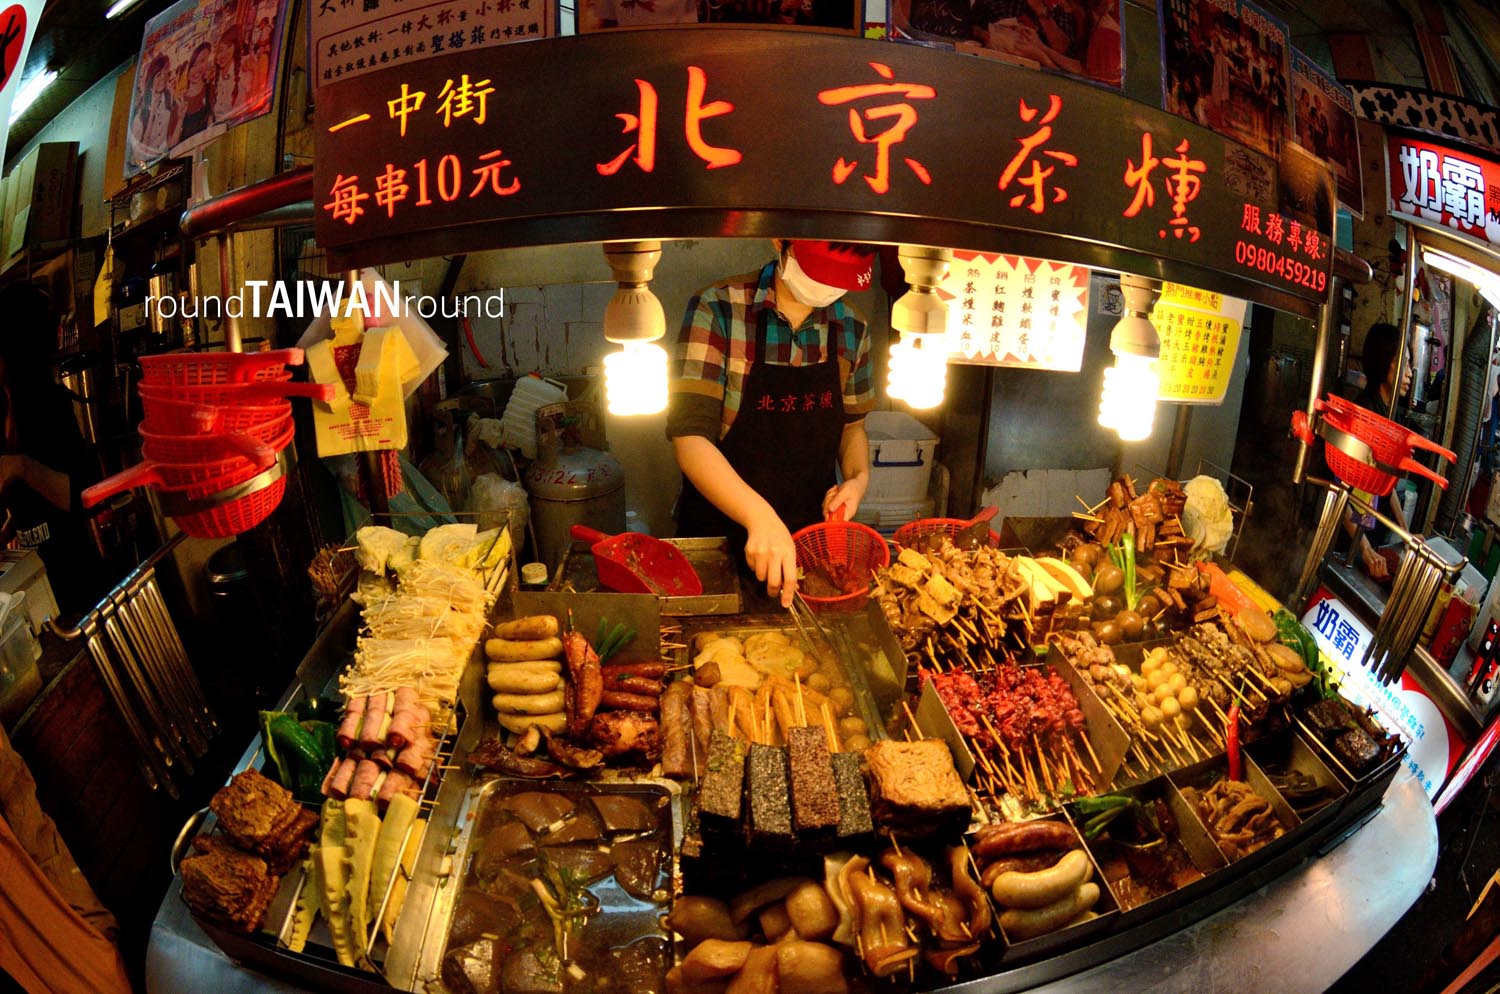 3. CHỢ ĐÊM PHÙNG GIÁP (FENGJIA) 3. Chợ đêm Phùng Giáp (Fengjia)Slideshow Quầy đồ chiên rán cực hấp dẫn tại chợ đêm Phùng Giáp (Ảnh: Sưu tầm)  Chợ đêm Phùng Giáp, thuộc Đài Trung, là điểm dừng chân của khách du lịch đến từ phía bắc, phía nam Đài Loan và các du khách quốc tế. Chợ họp các ngày trong tuần, từ 16h đến nửa đêm.  Các gian hàng ẩm thực trong chợ đều được những đầu bếp giỏi từ khắp mọi miền Đài Loan mở. Thịt bạch tuộc được buộc thành hình quả bóng, xúc xích cuộn nếp gạo, bánh crepe, gà rán hàu, súp khoai môn bóng ngọt... đều là những món ăn gây thương nhớ cho mọi du khách ghé Phùng Giáp.